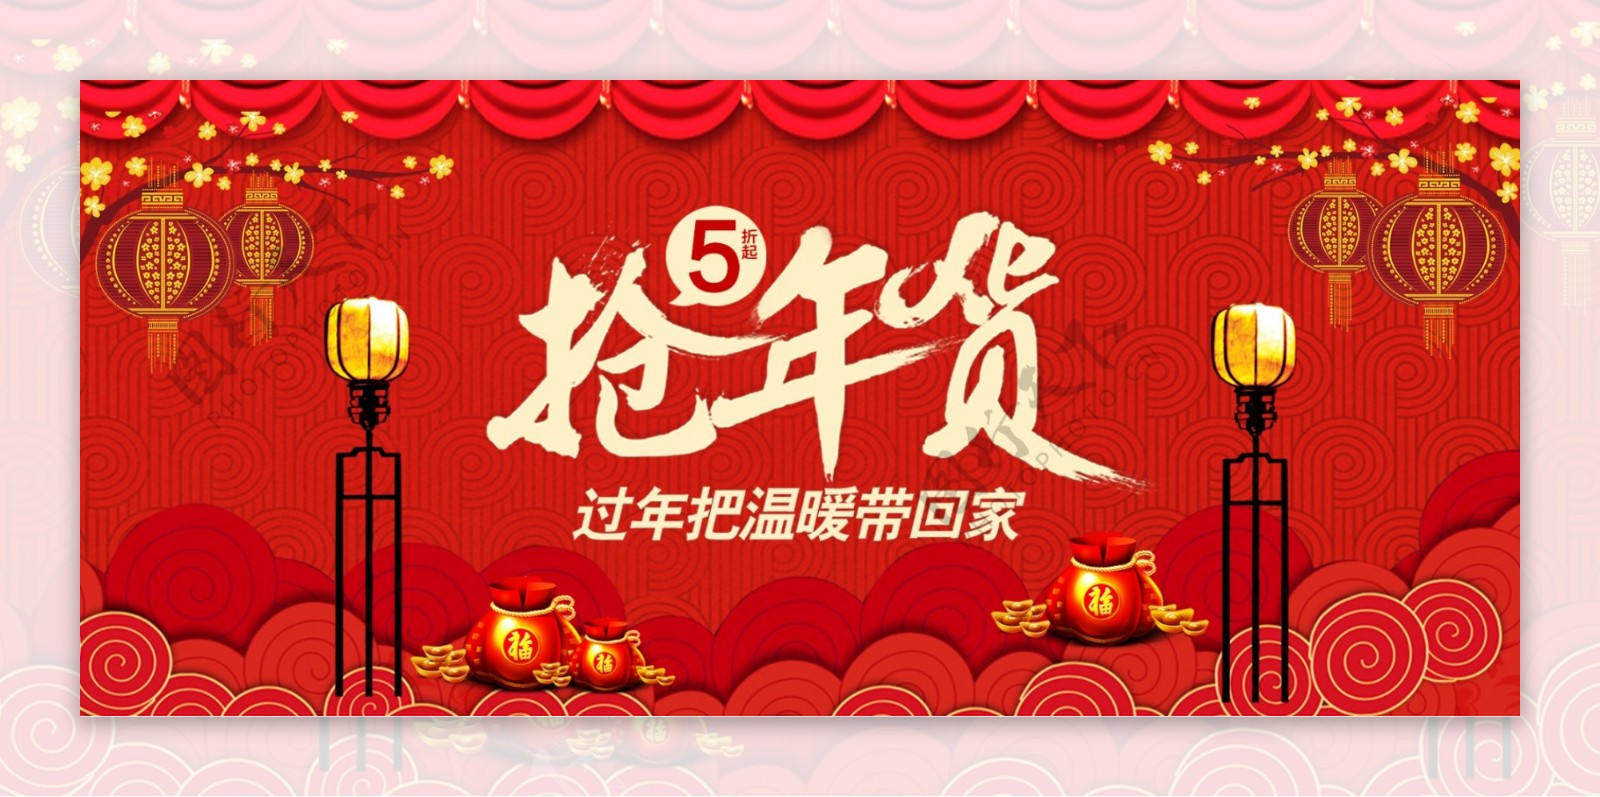 红色中国风五折抢年货节日促销海报